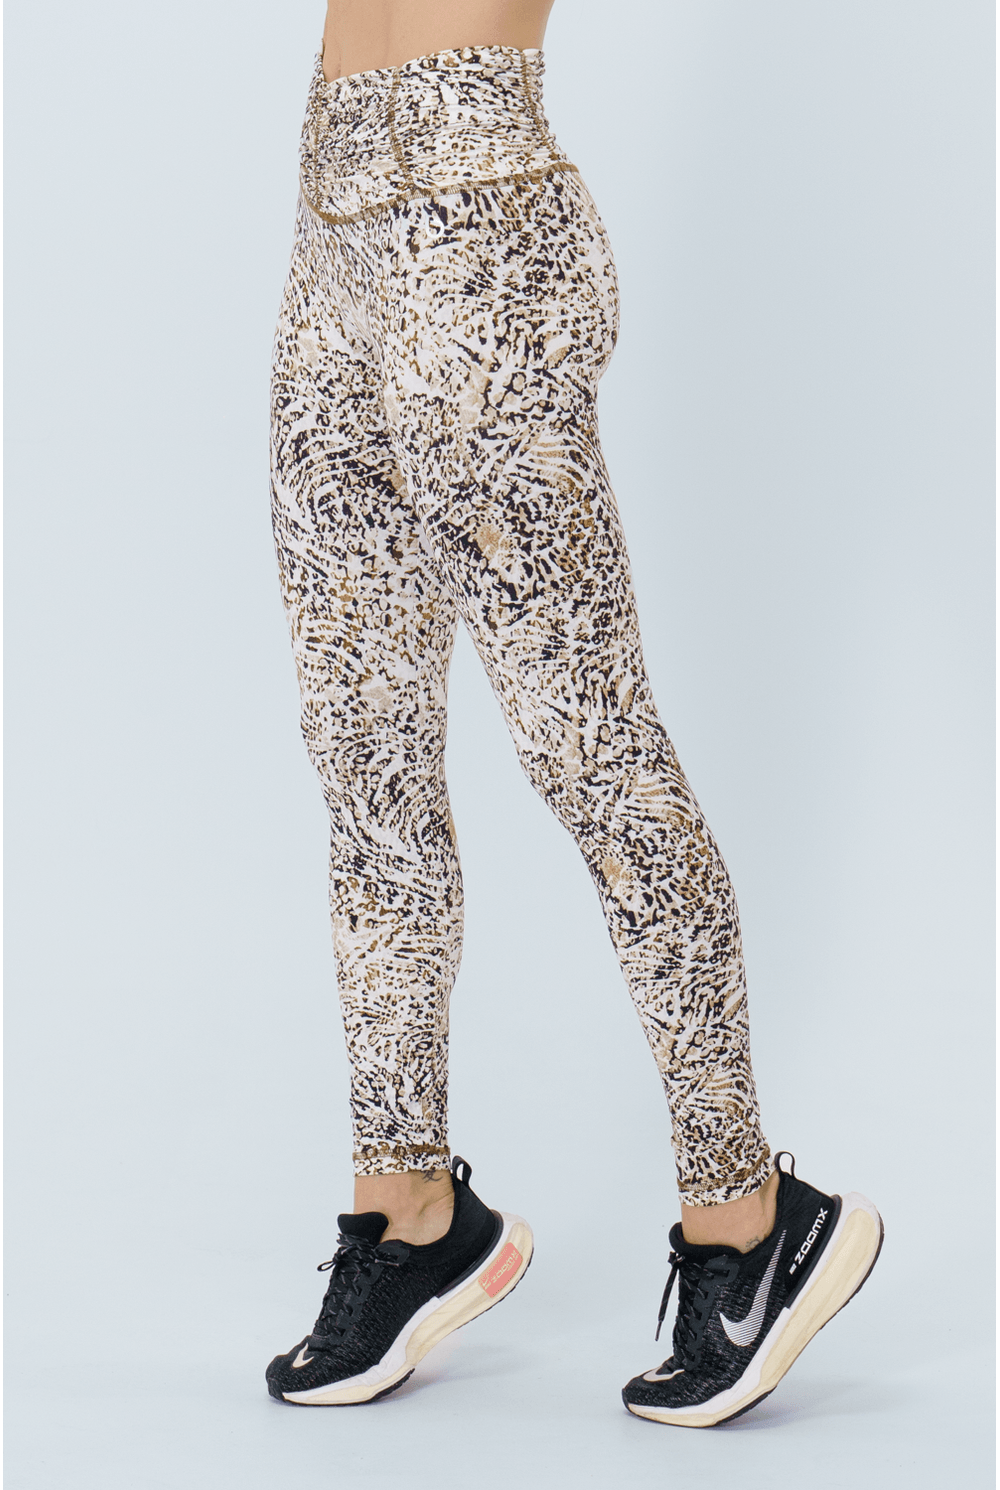 Leopard Print - Calça Legging